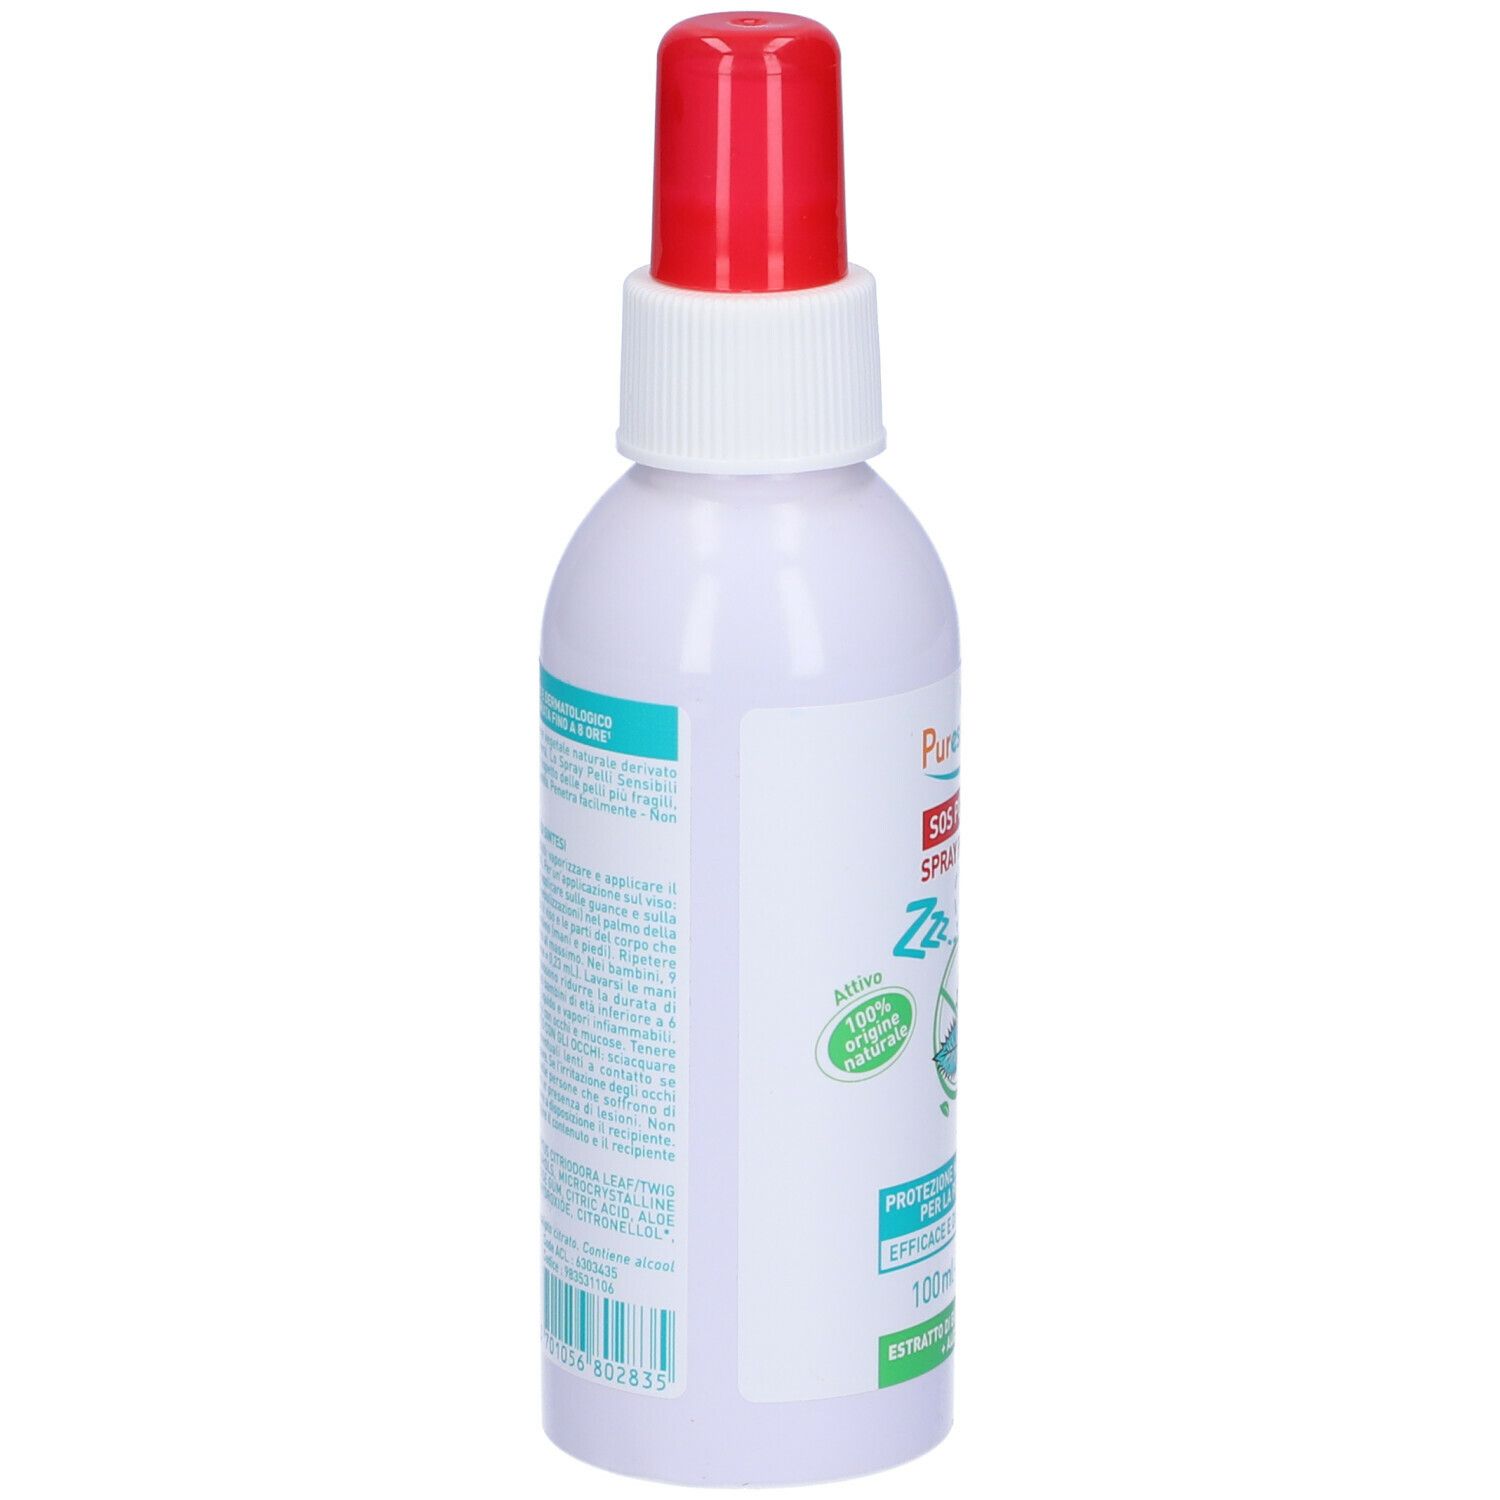 Puressentiel SOS Punture Spray Pelli Sensibili